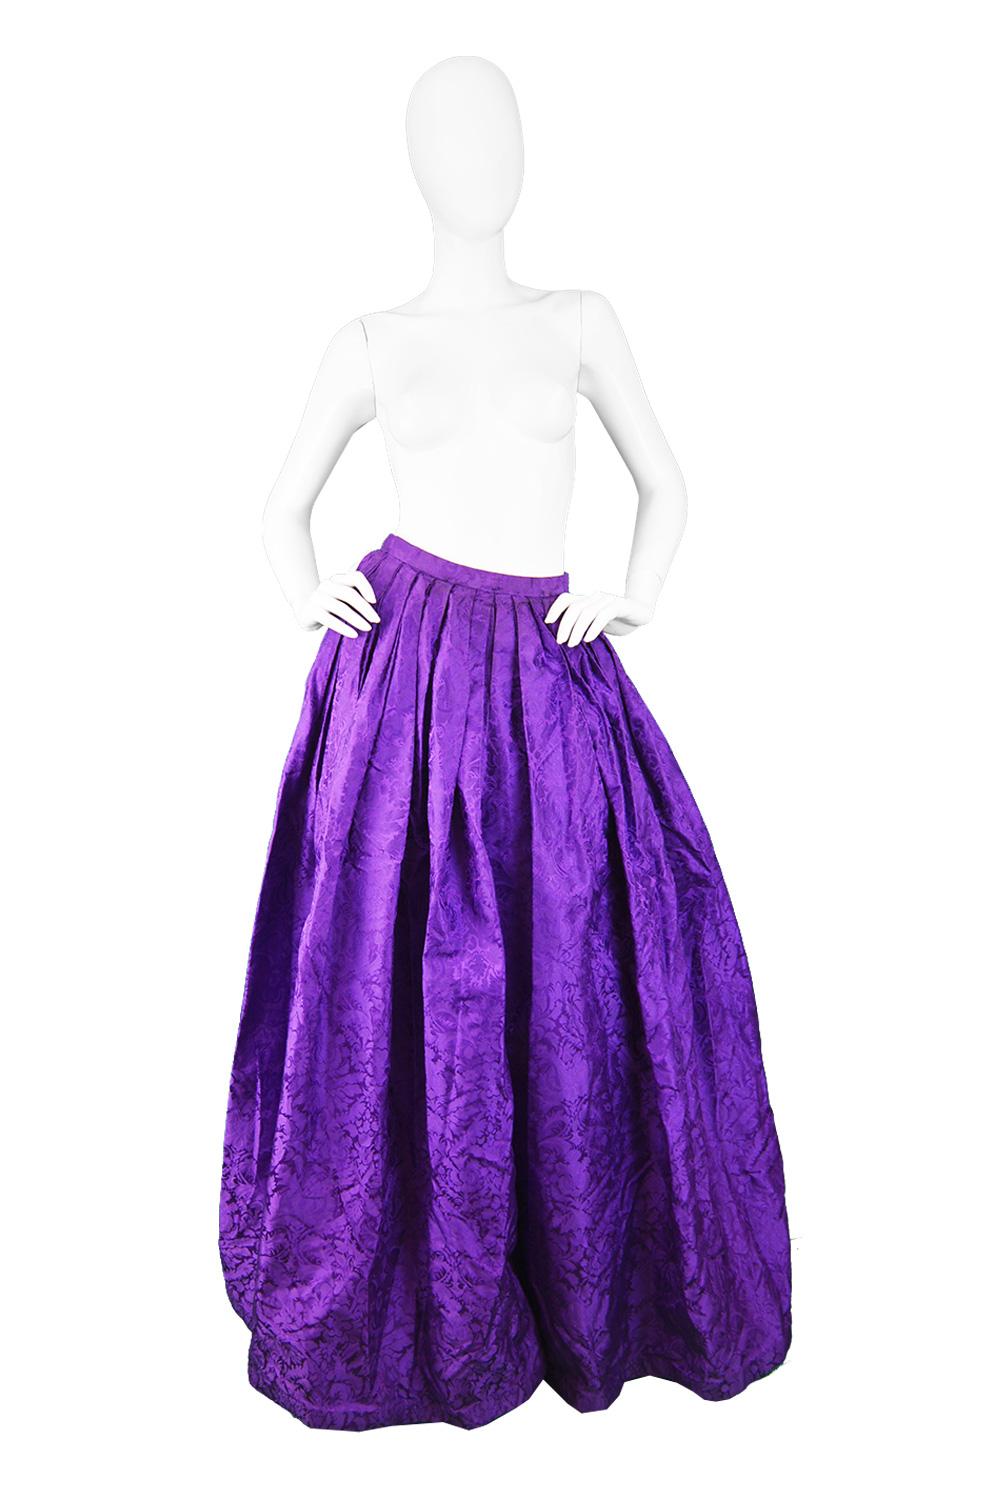 Oscar de la Renta Purple Silk Damask Satin Jacquard Wide Leg Palazzo Trousers, 1980s

Estimated Size: UK 6/ US 2/ EU 34. Please check measurements.
Waist - 25” / 63cm
Hips - Free
Rise - 15” / 38cm
Inside Leg - 37” / 94cm

Condition: Excellent